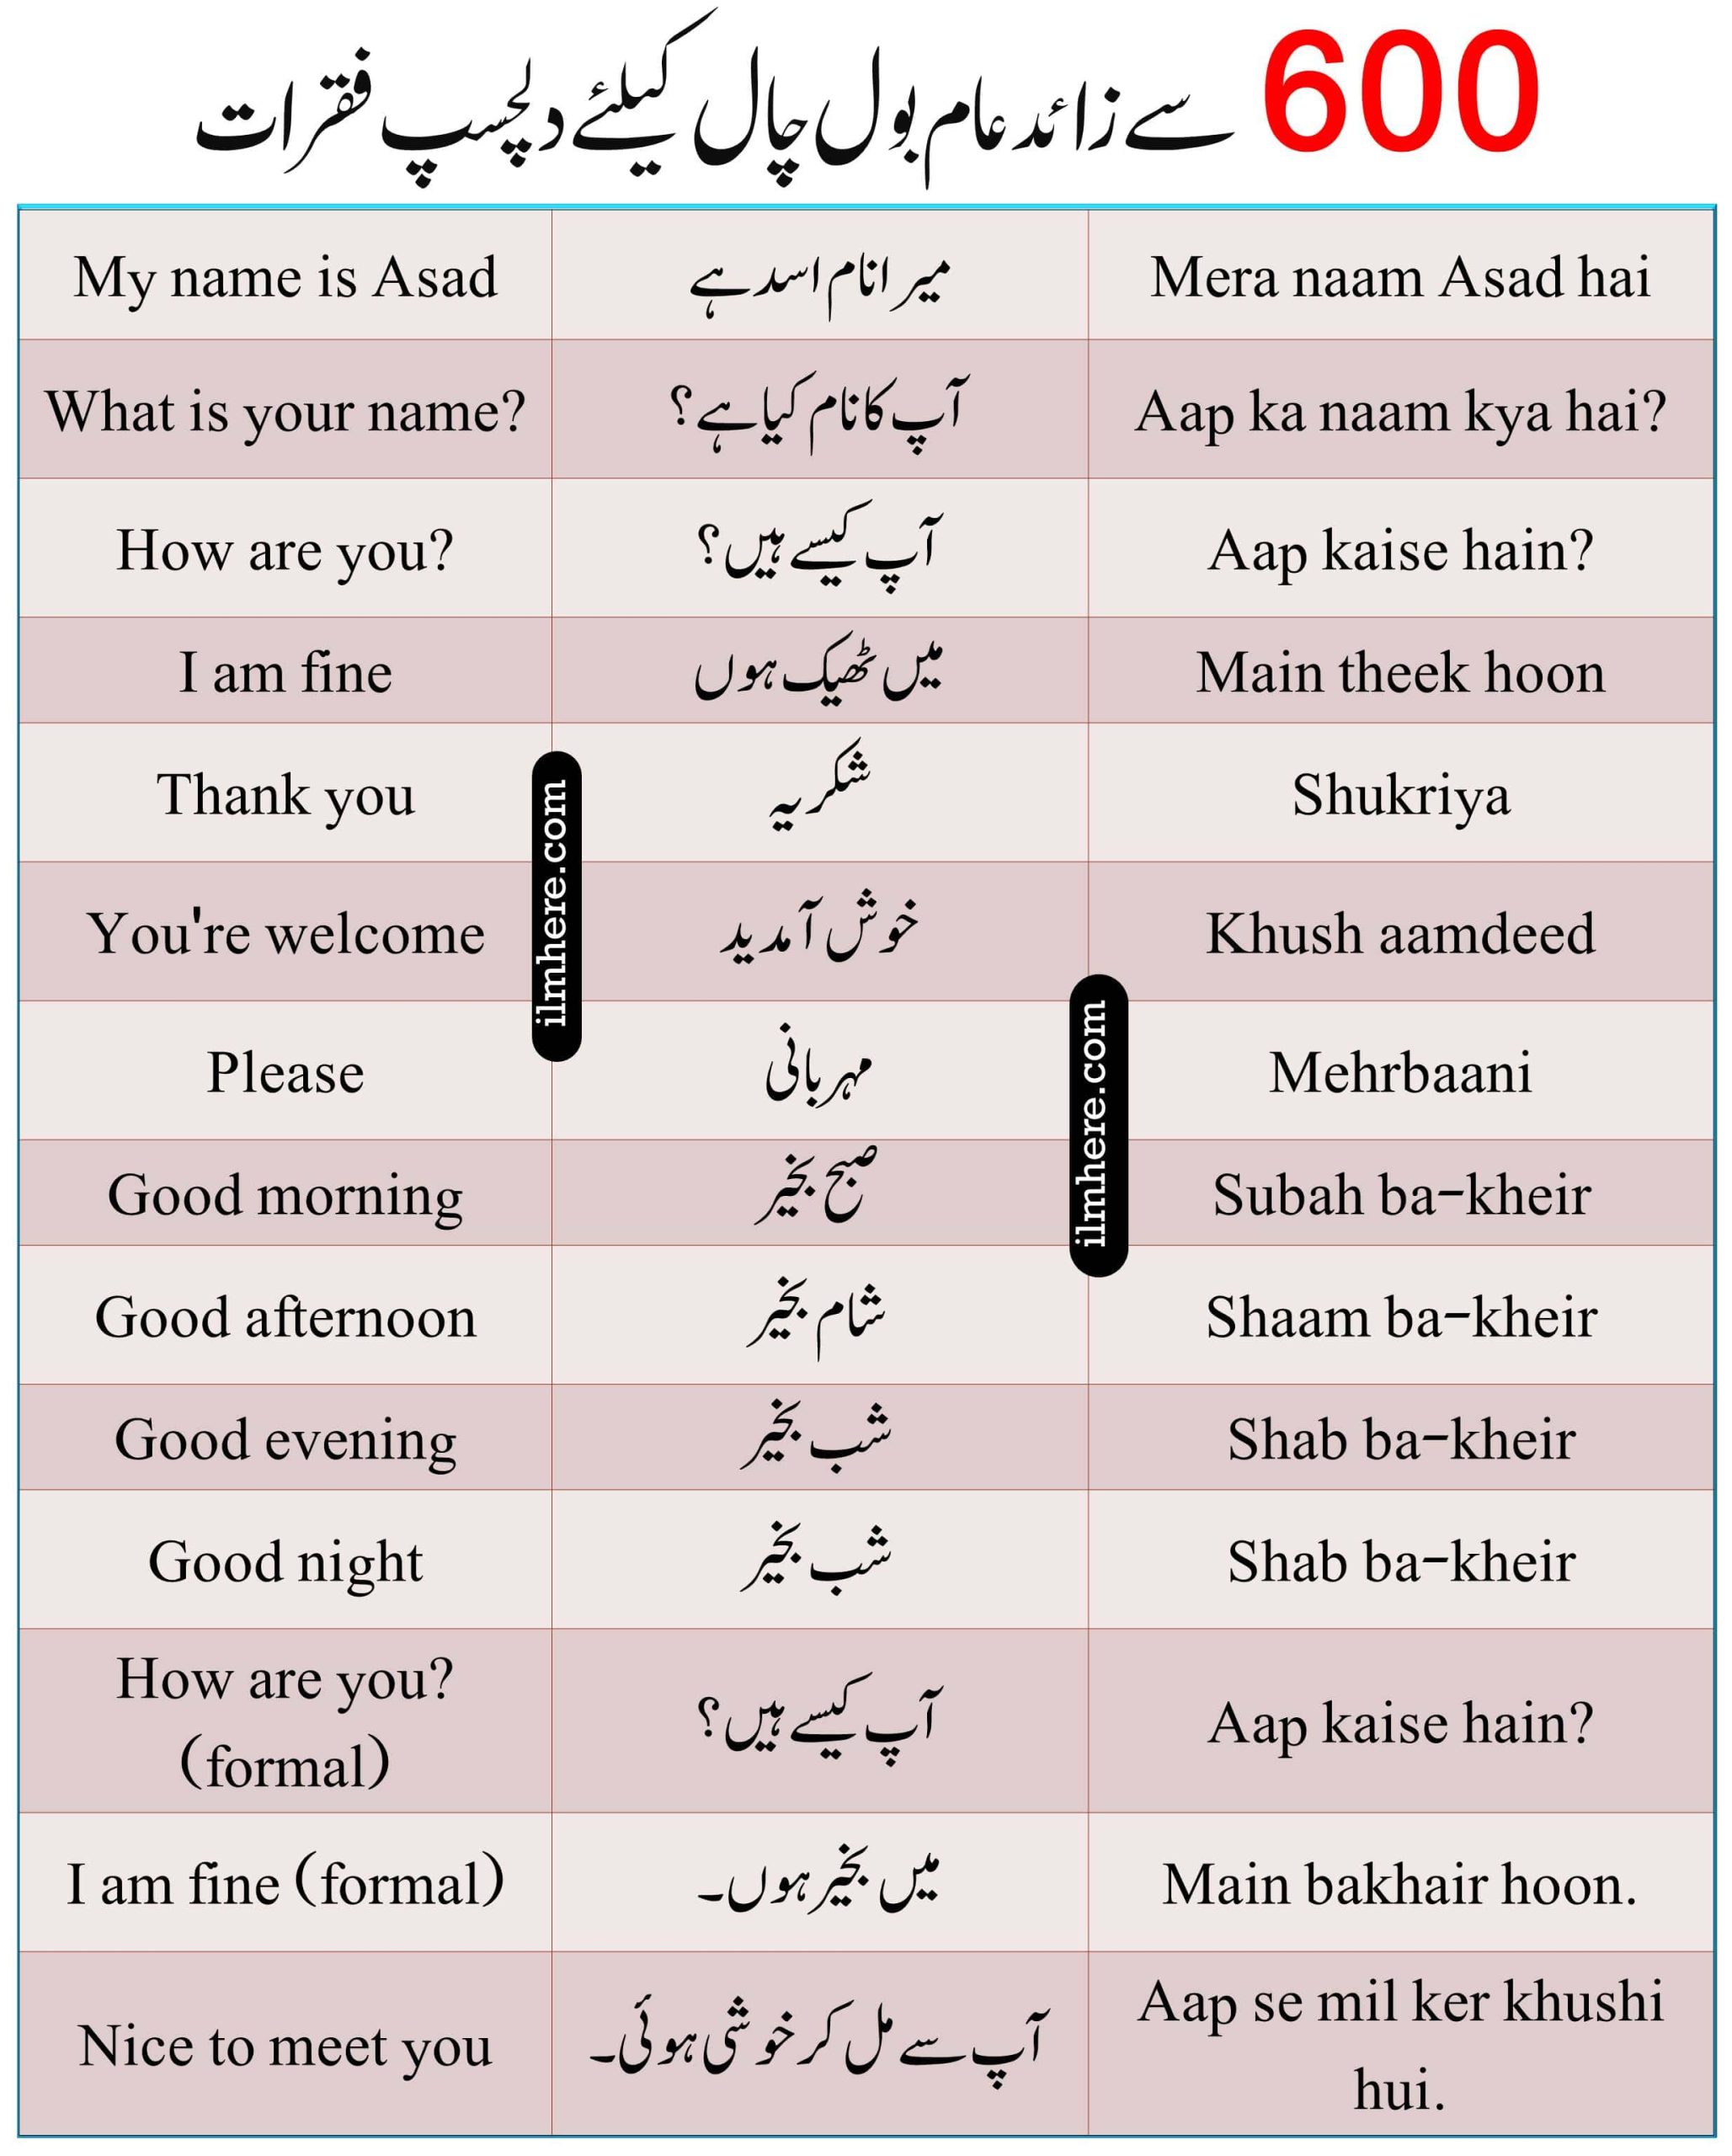 Top English To Urdu Sentences With Hindi Translation